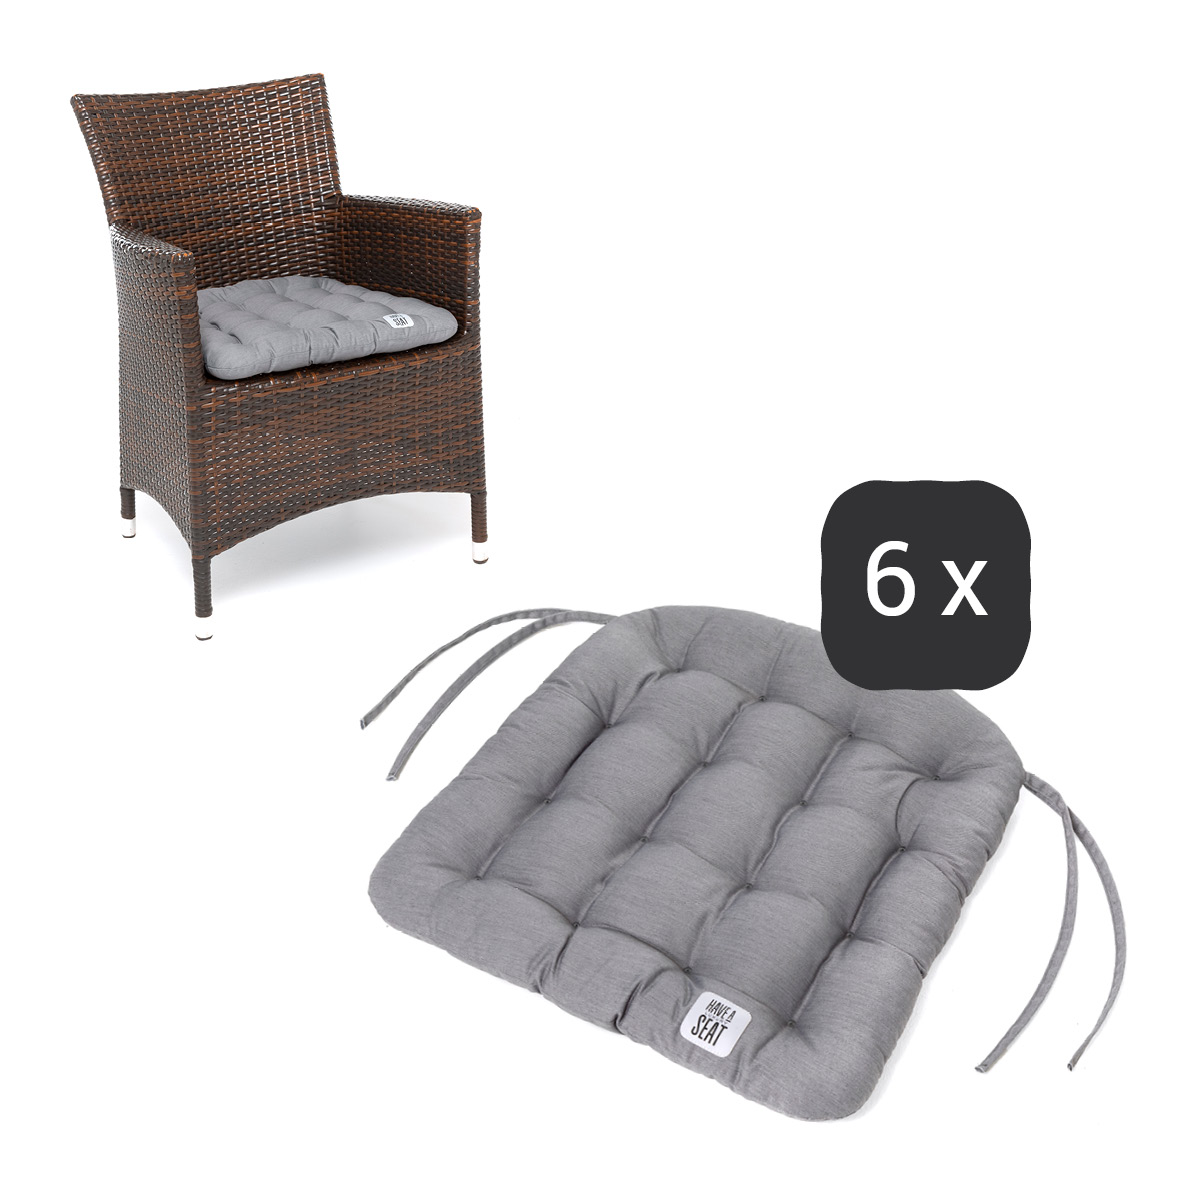 Sitzkissen für Rattanstühle 48x46 cm | Hellgrau | 6er Set | Premium-Sitzkomfort | Indoor / Outdoor | waschbar bis 95°C | HAVE A SEAT Living